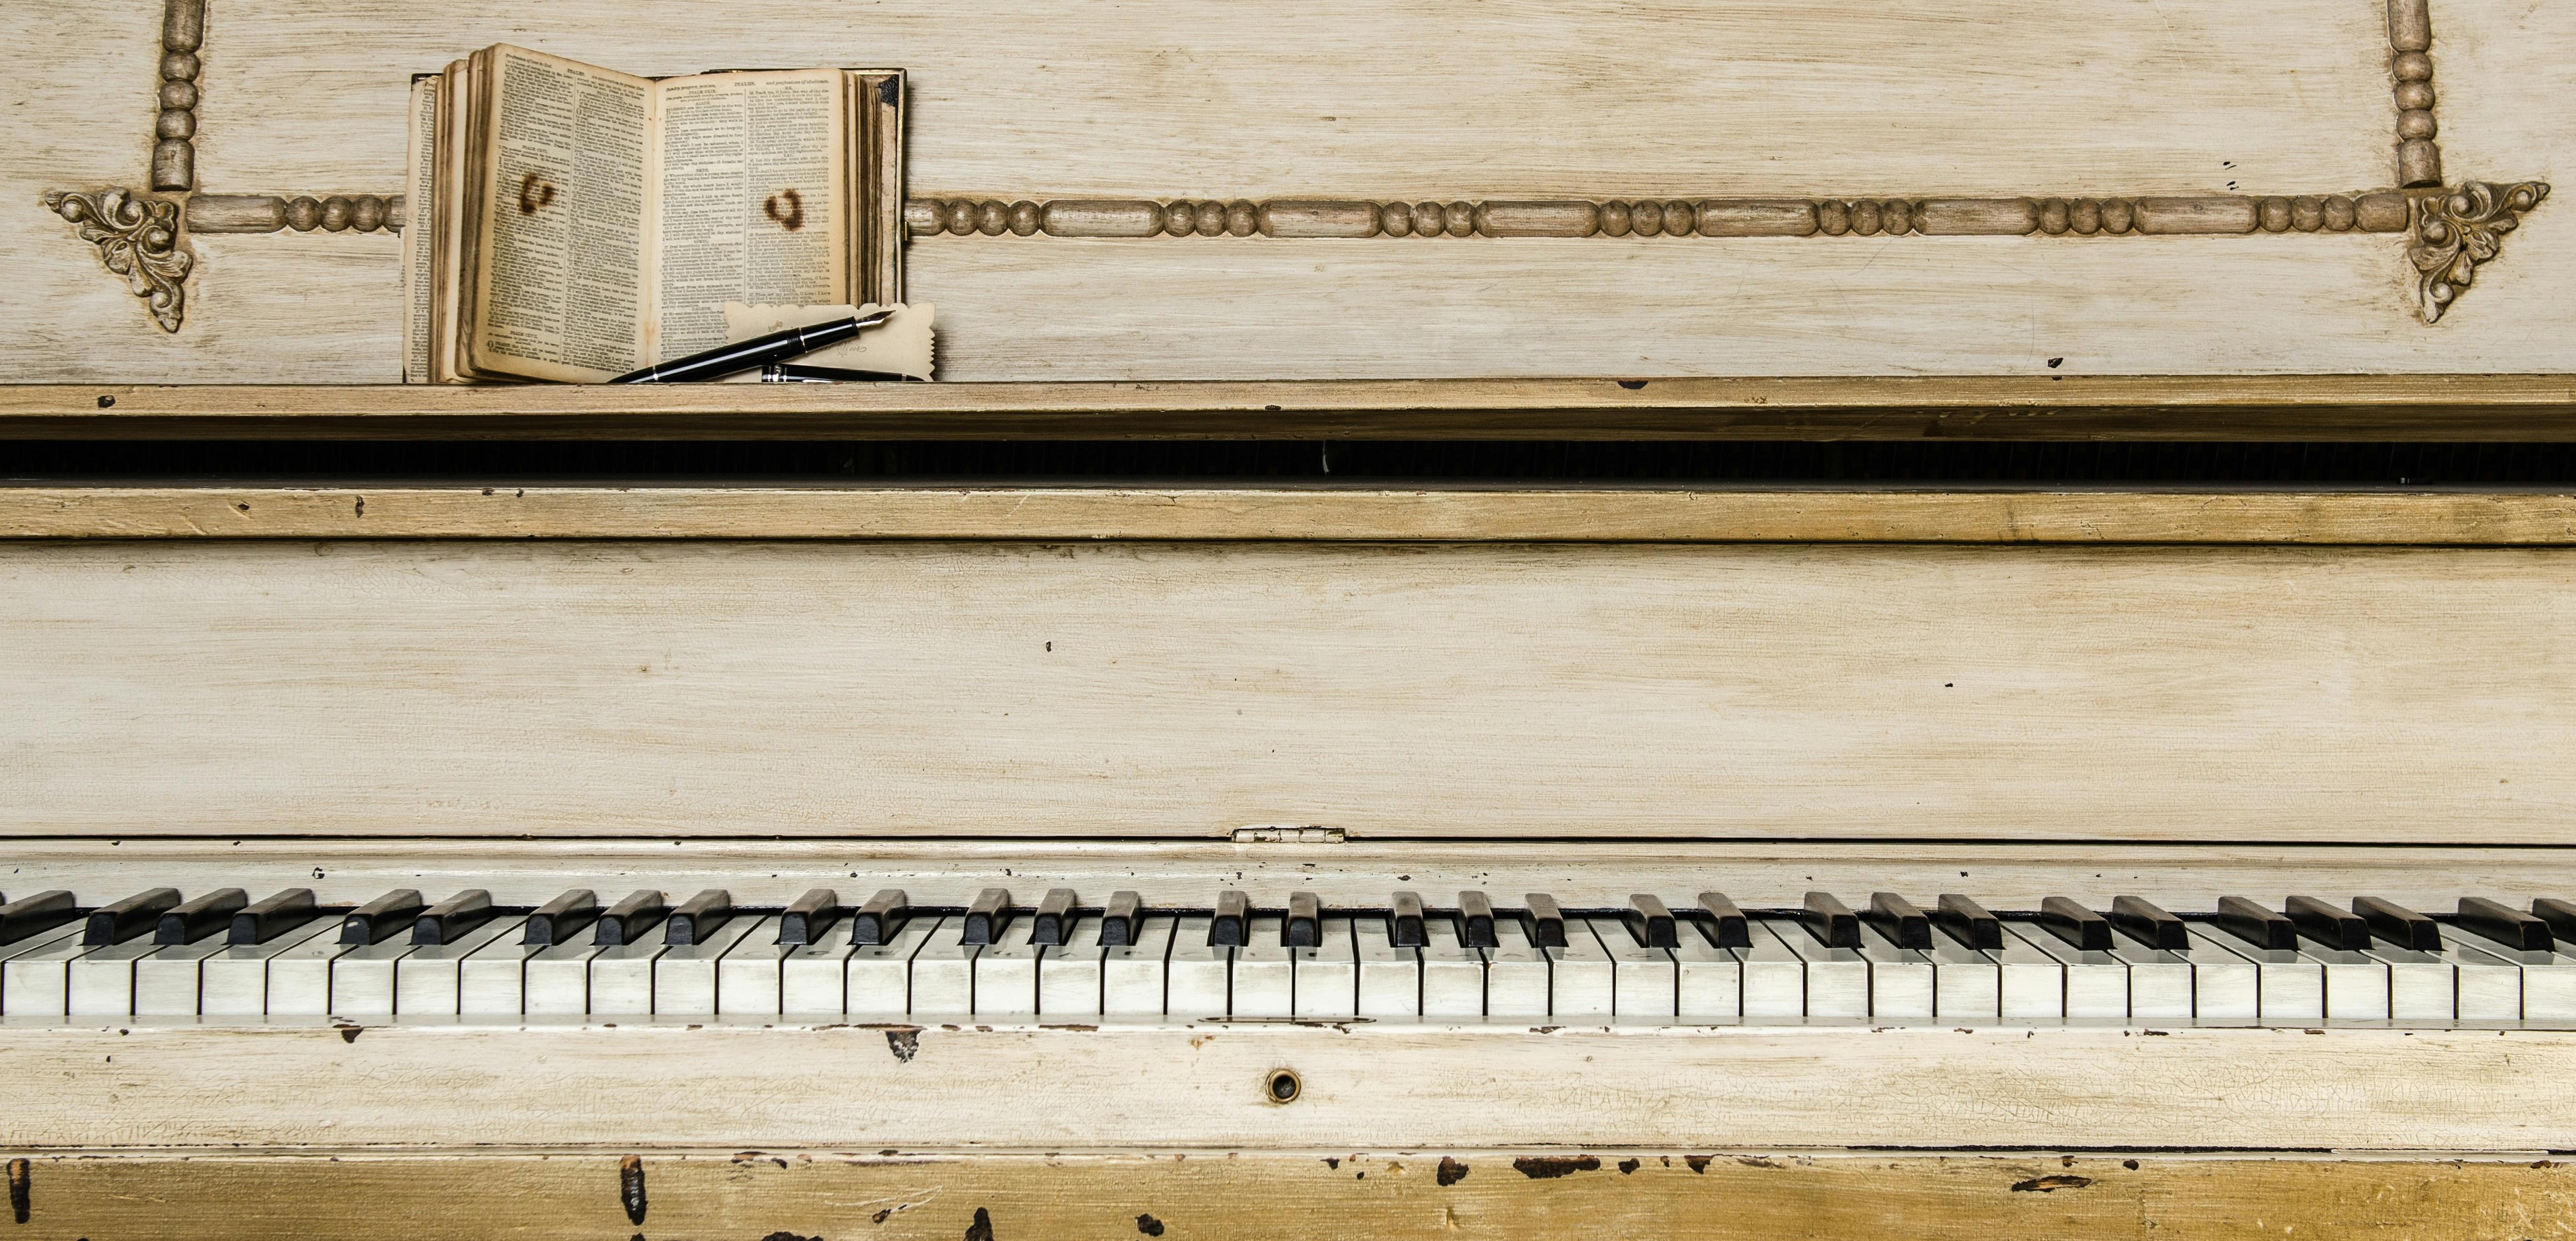 Концерт «Грани органной музыки» в Петрикирхе со скидкой 35%